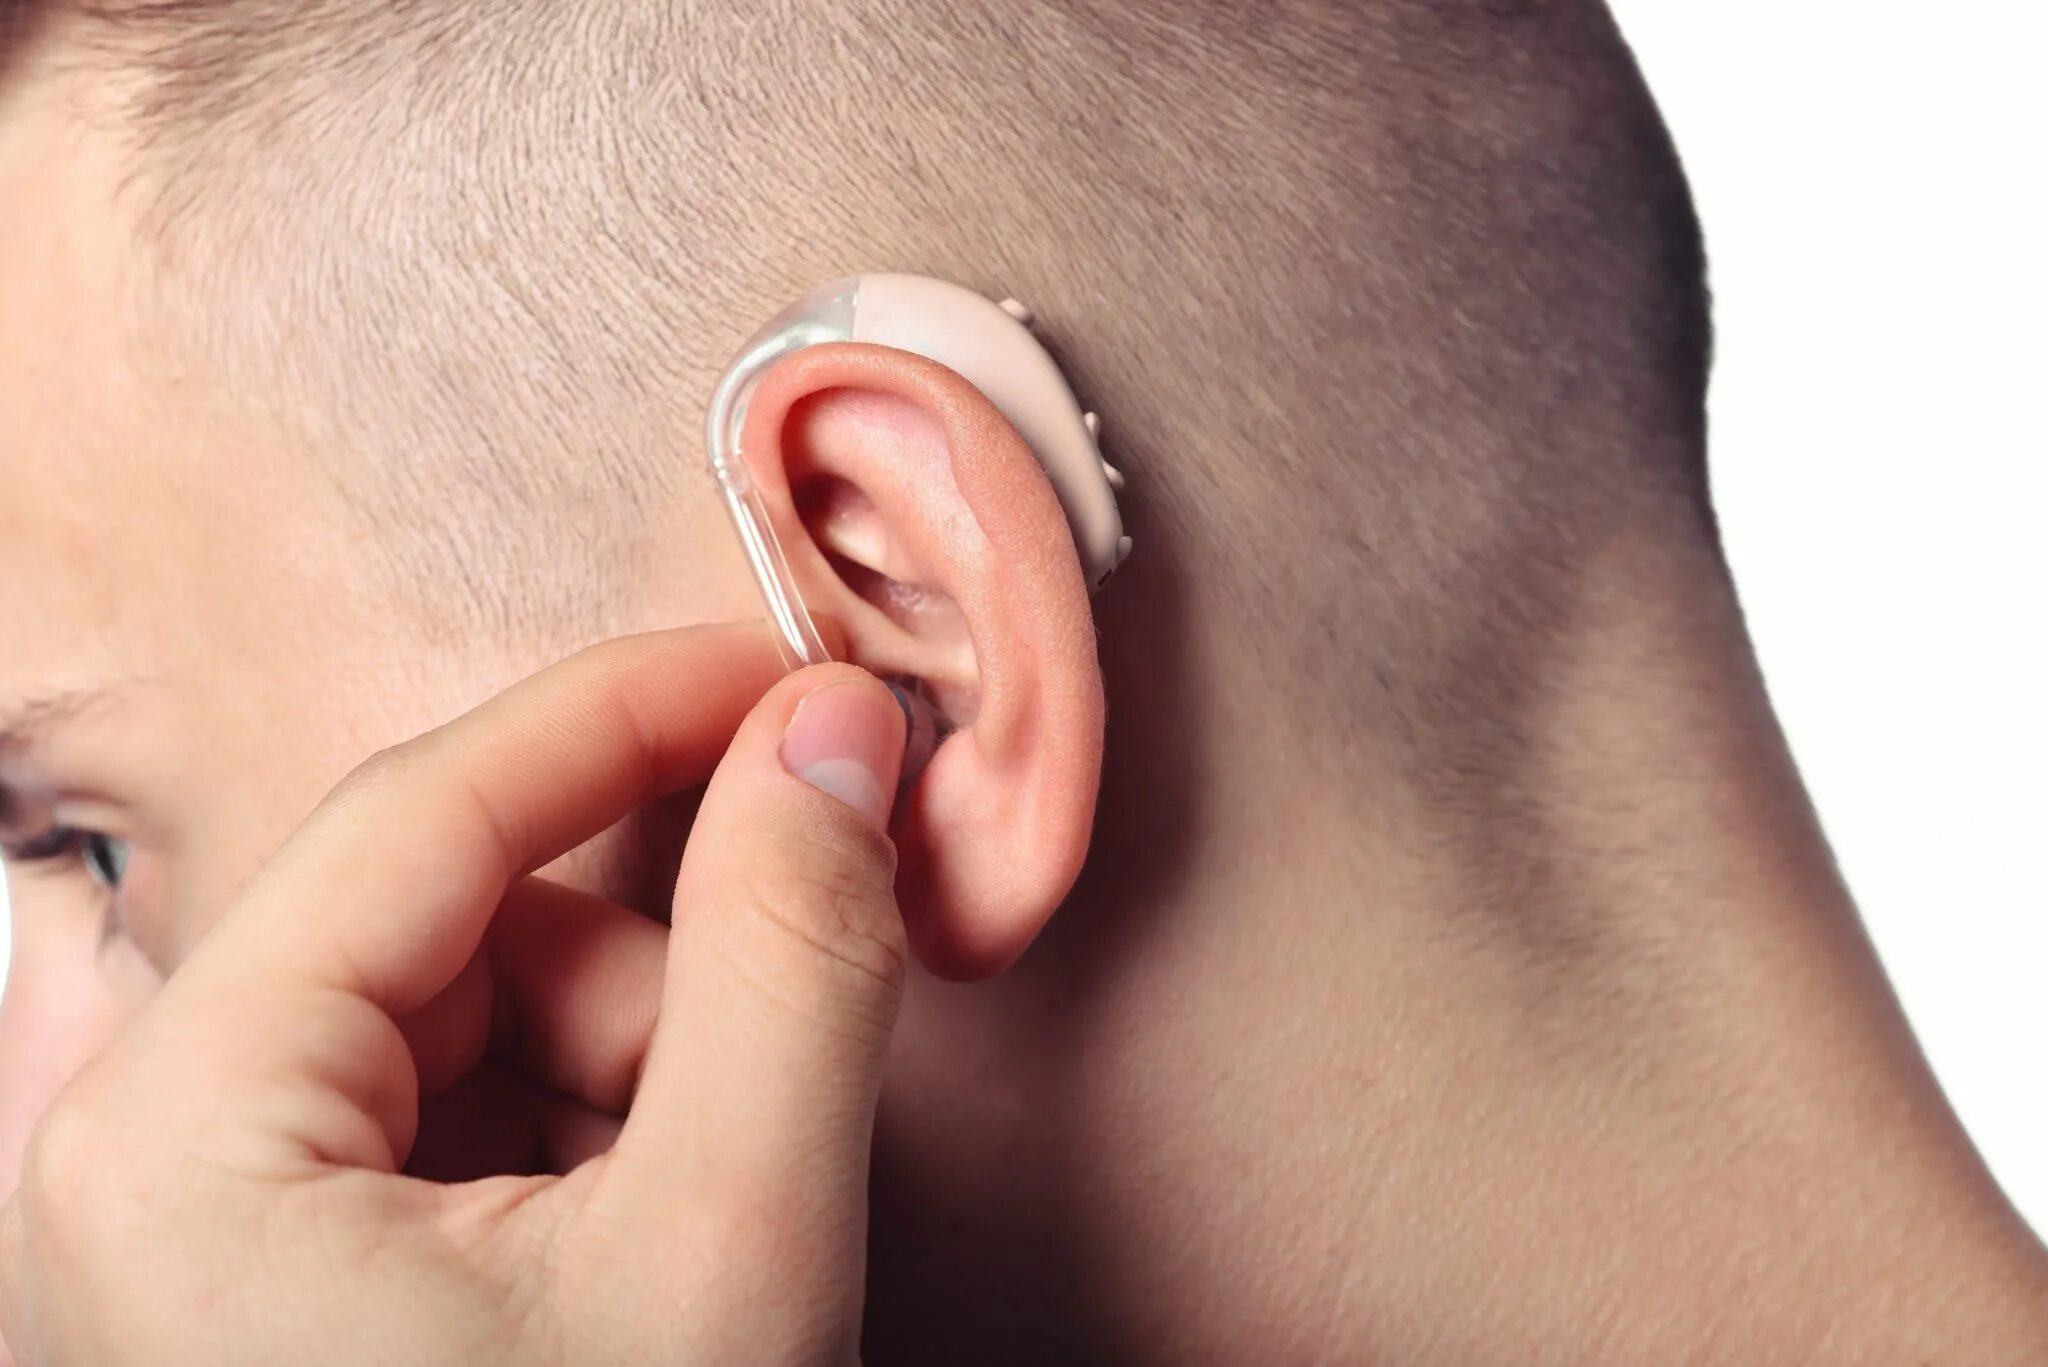 Заушные слуховые аппараты (BTE). Hearing Aid слуховой аппарат. Ушной протез для слуха. Музыкальный слух у человека